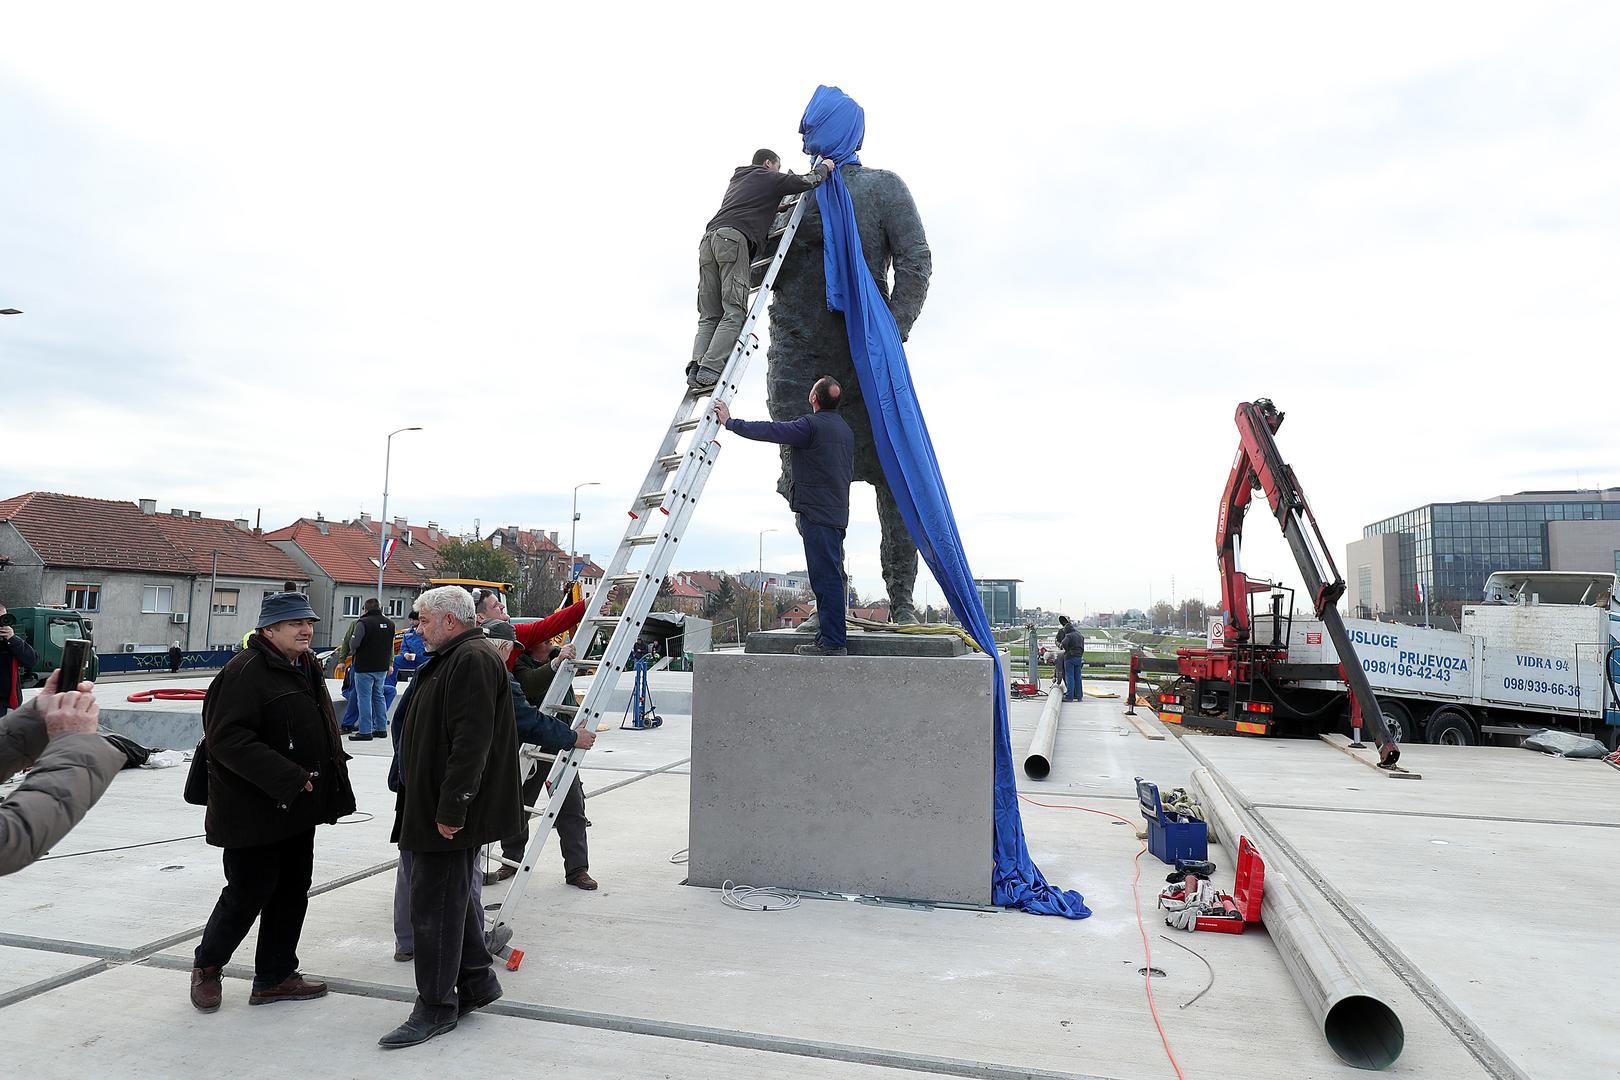 Na križanju zagrebačke Ulice grada Vukovara i Avenije Hrvatske bratske zajednice postavljen je kip dr. Franje Tuđmana, prvog hrvatskog predsjednika.

